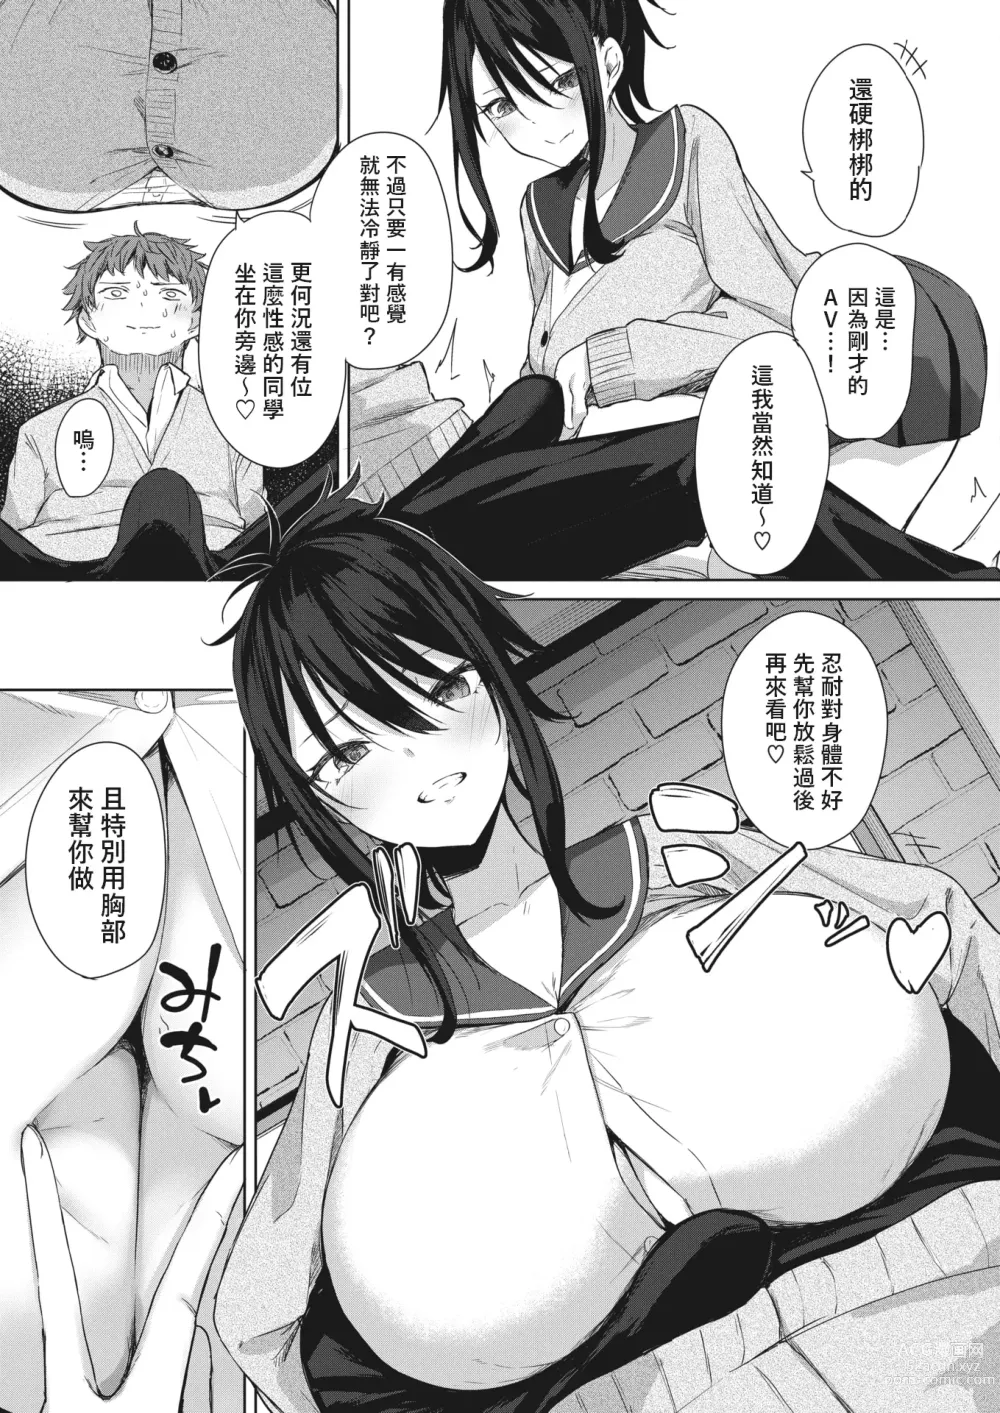 Page 7 of manga Risou no Date